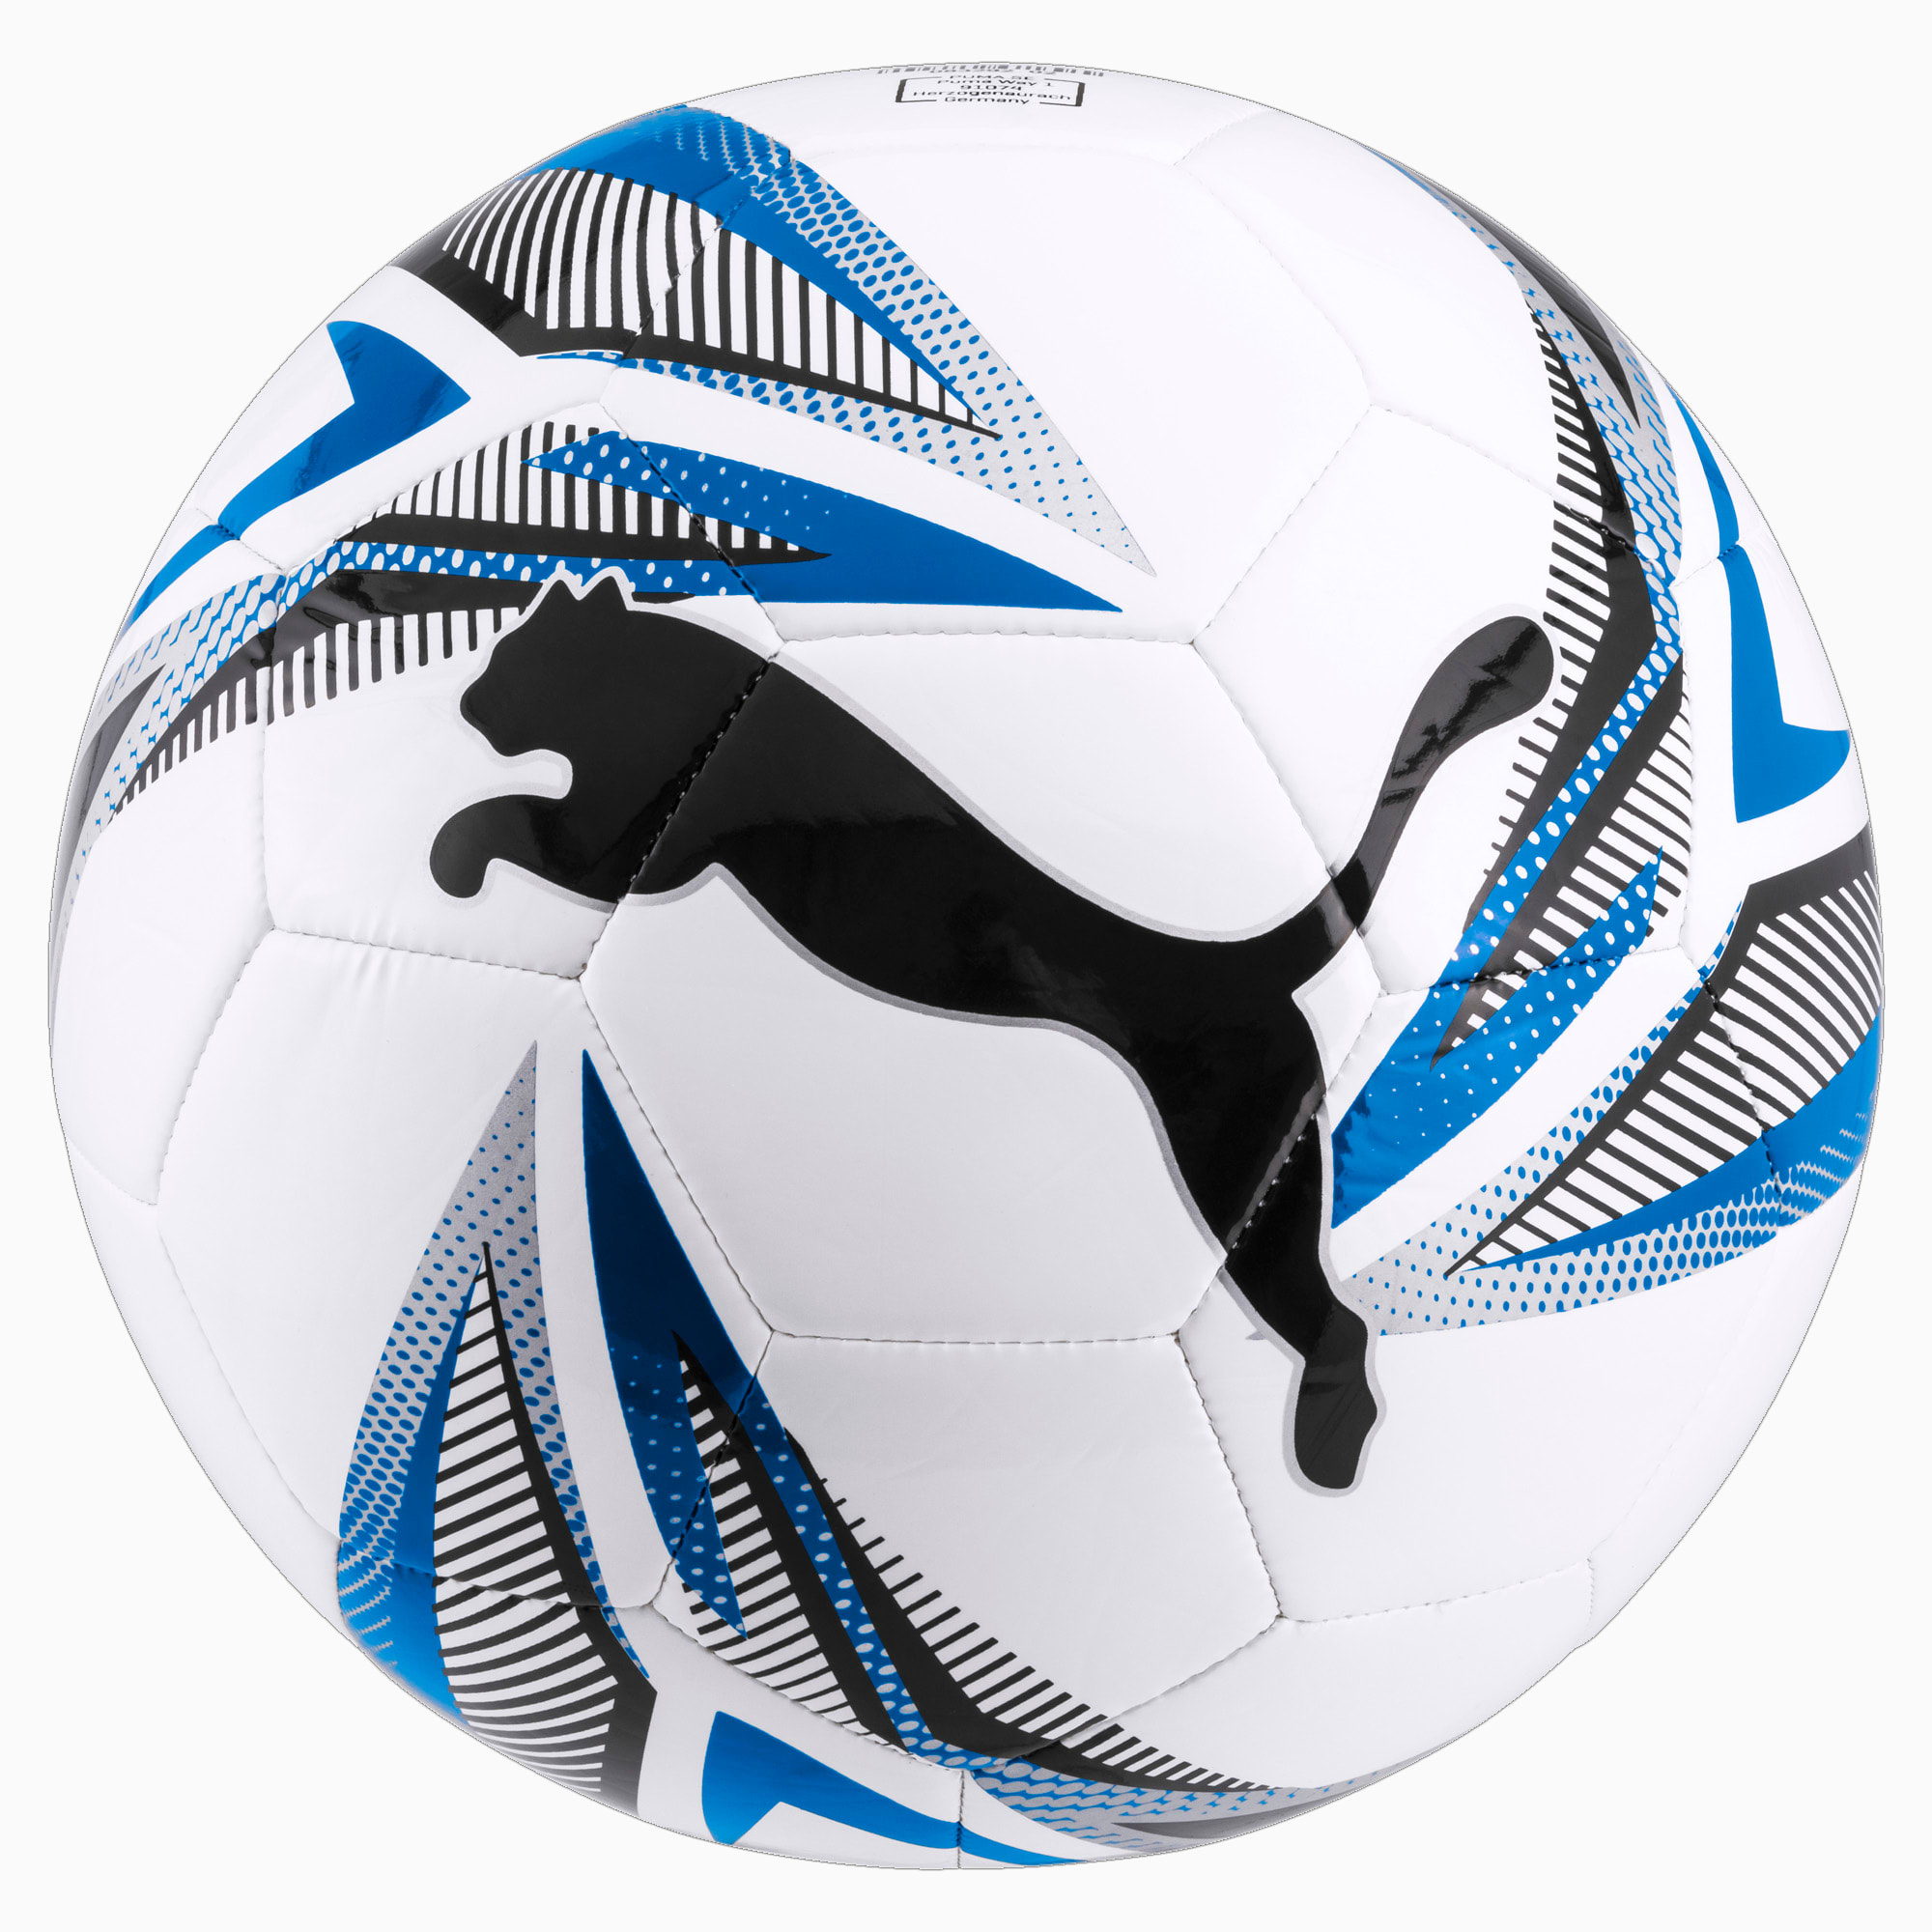 Image of PUMA ftblPLAY Big Cat Fußball | Mit Aucun | Weiß/Blau/Schwarz | Größe: 4